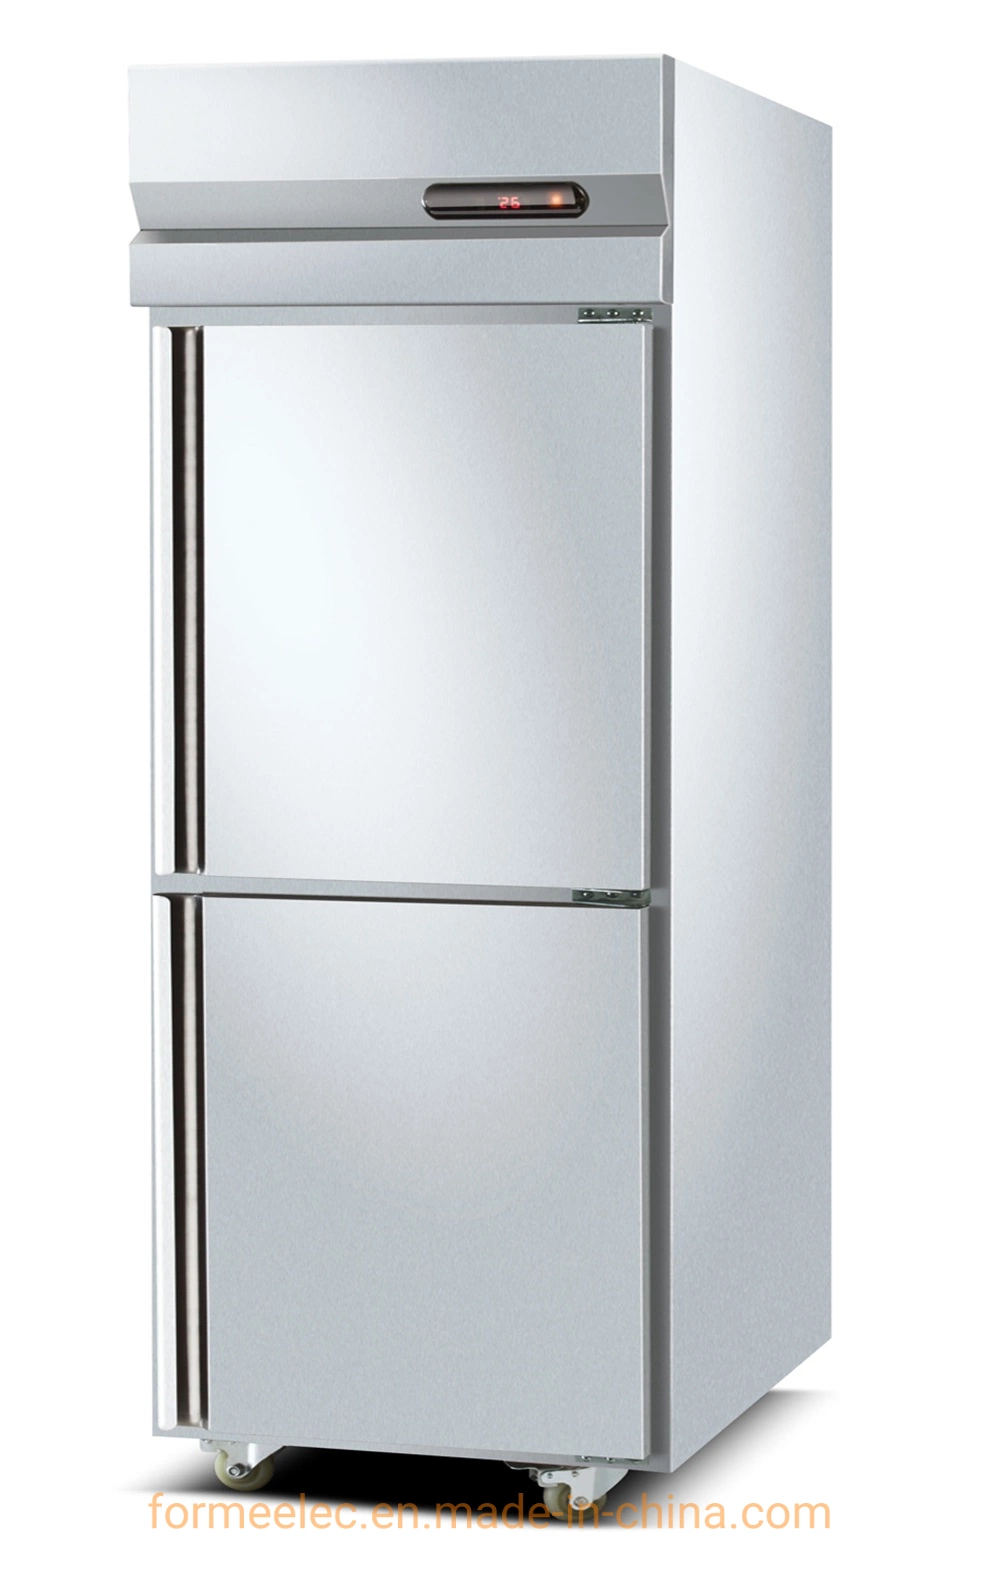 500L Küche Kühlgeräte Küche Kühlschrank Luft Kühlung Küche Gefrierschrank